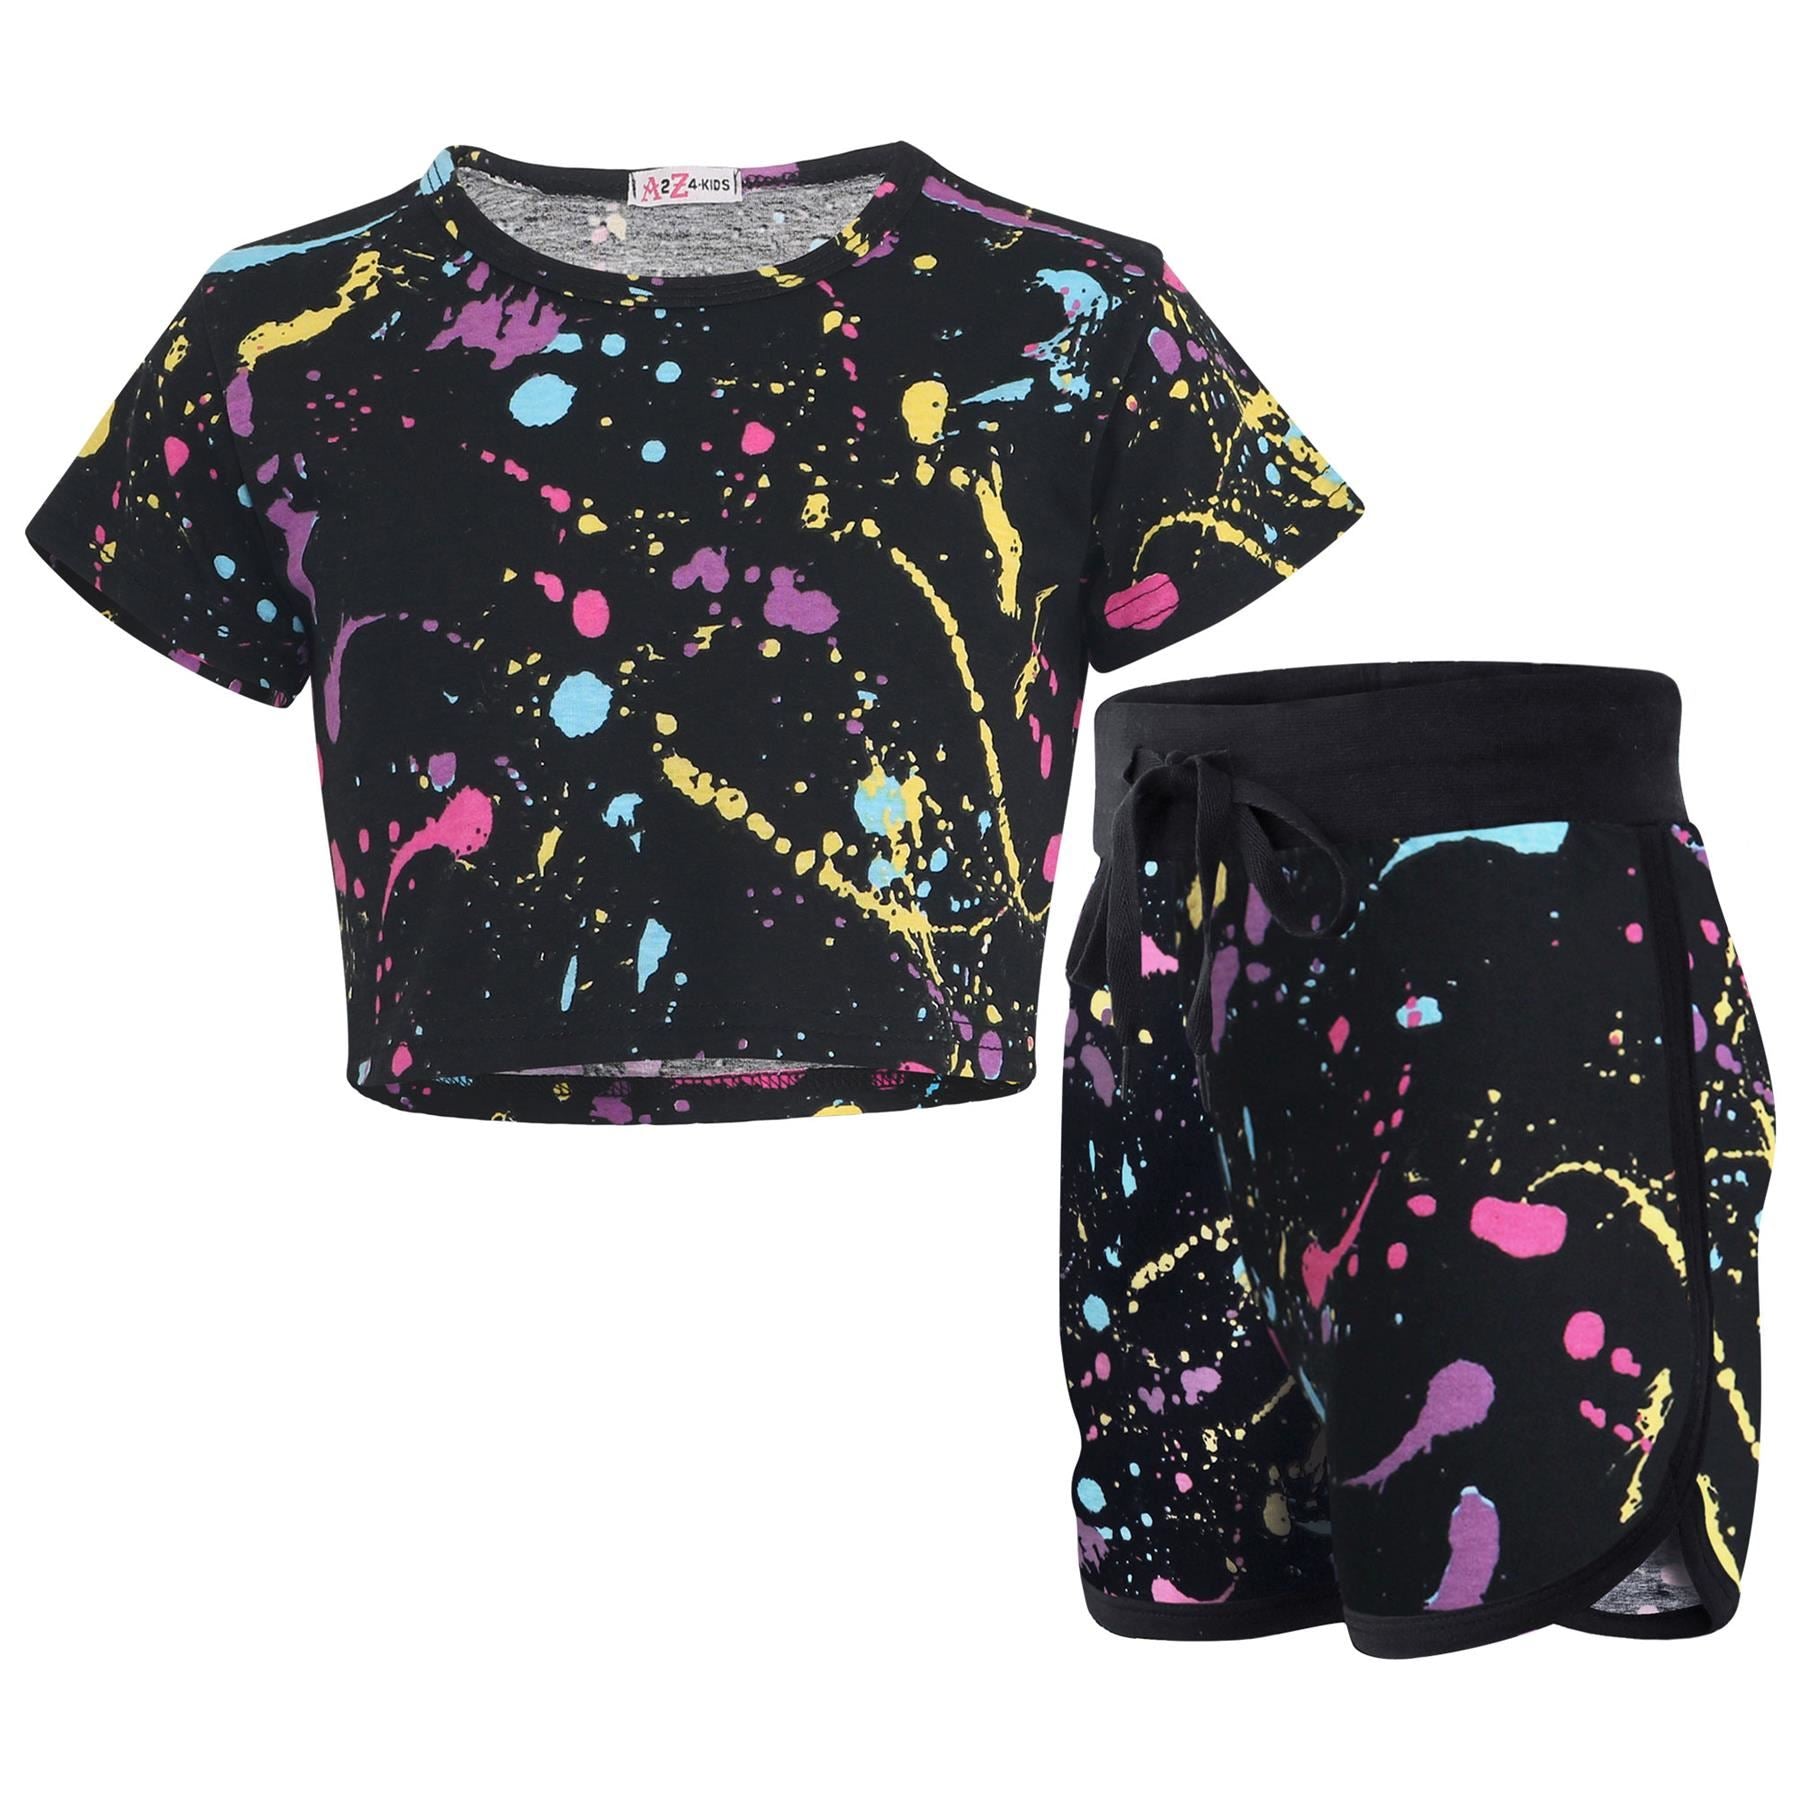 Girls Pastel Splash Print Summer Top & Hot Shorts Set